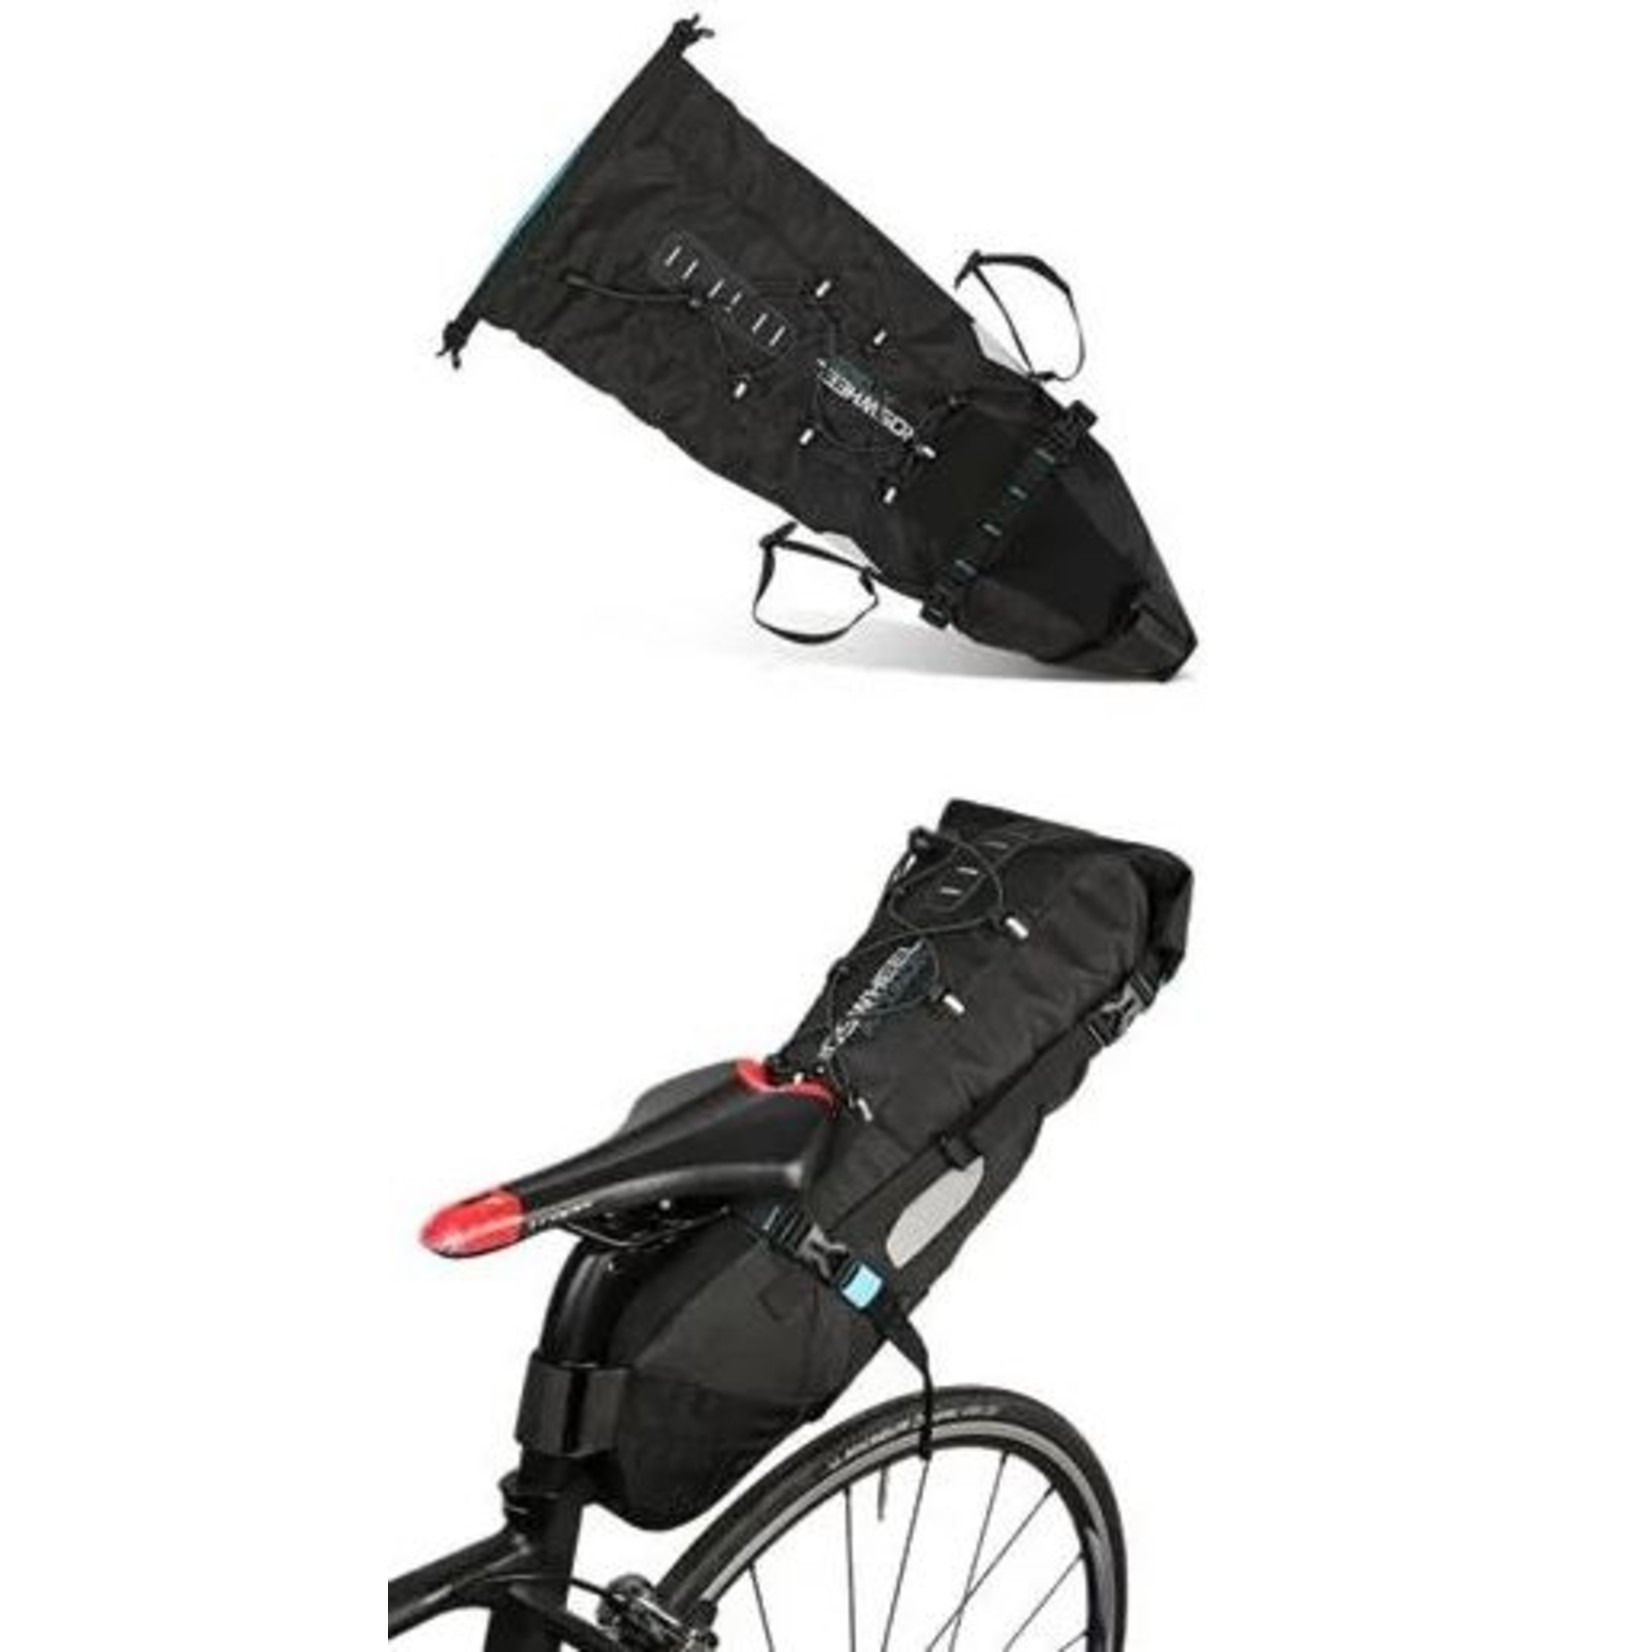 Roswheel Roswheel Seat Bag - Bike Packing/Touring 3-10L Q/R - Waterproof - Large